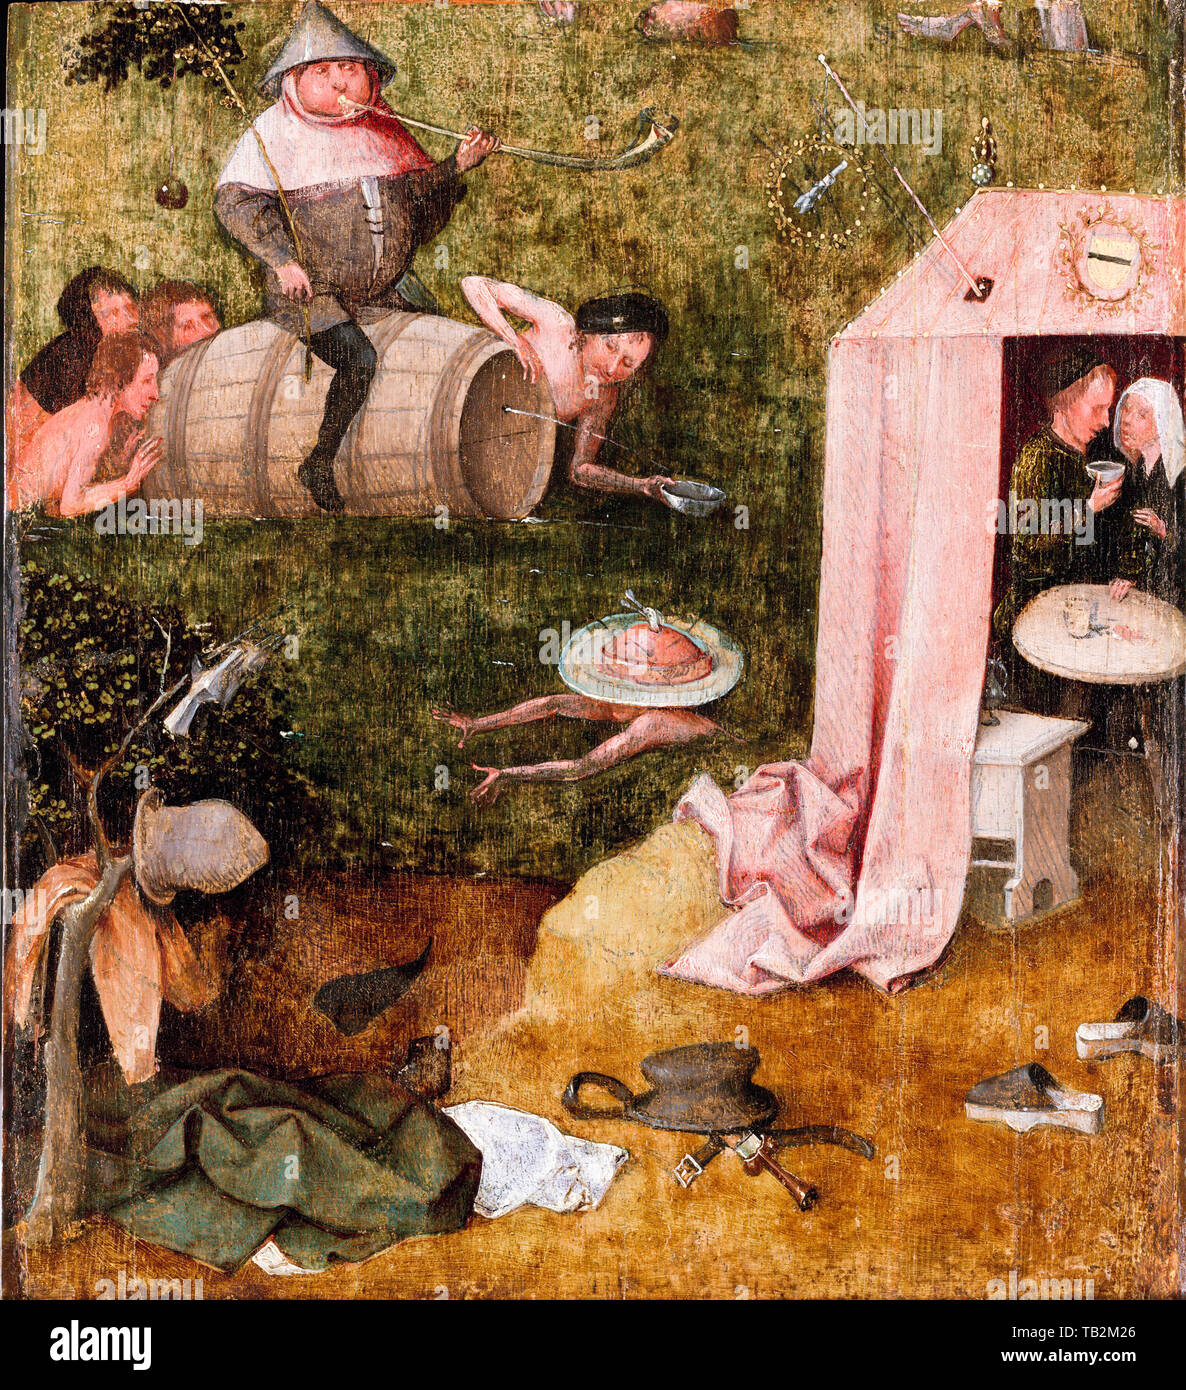 Jérôme Bosch, une allégorie de l'intempérance, peinture, vers 1495 Banque D'Images